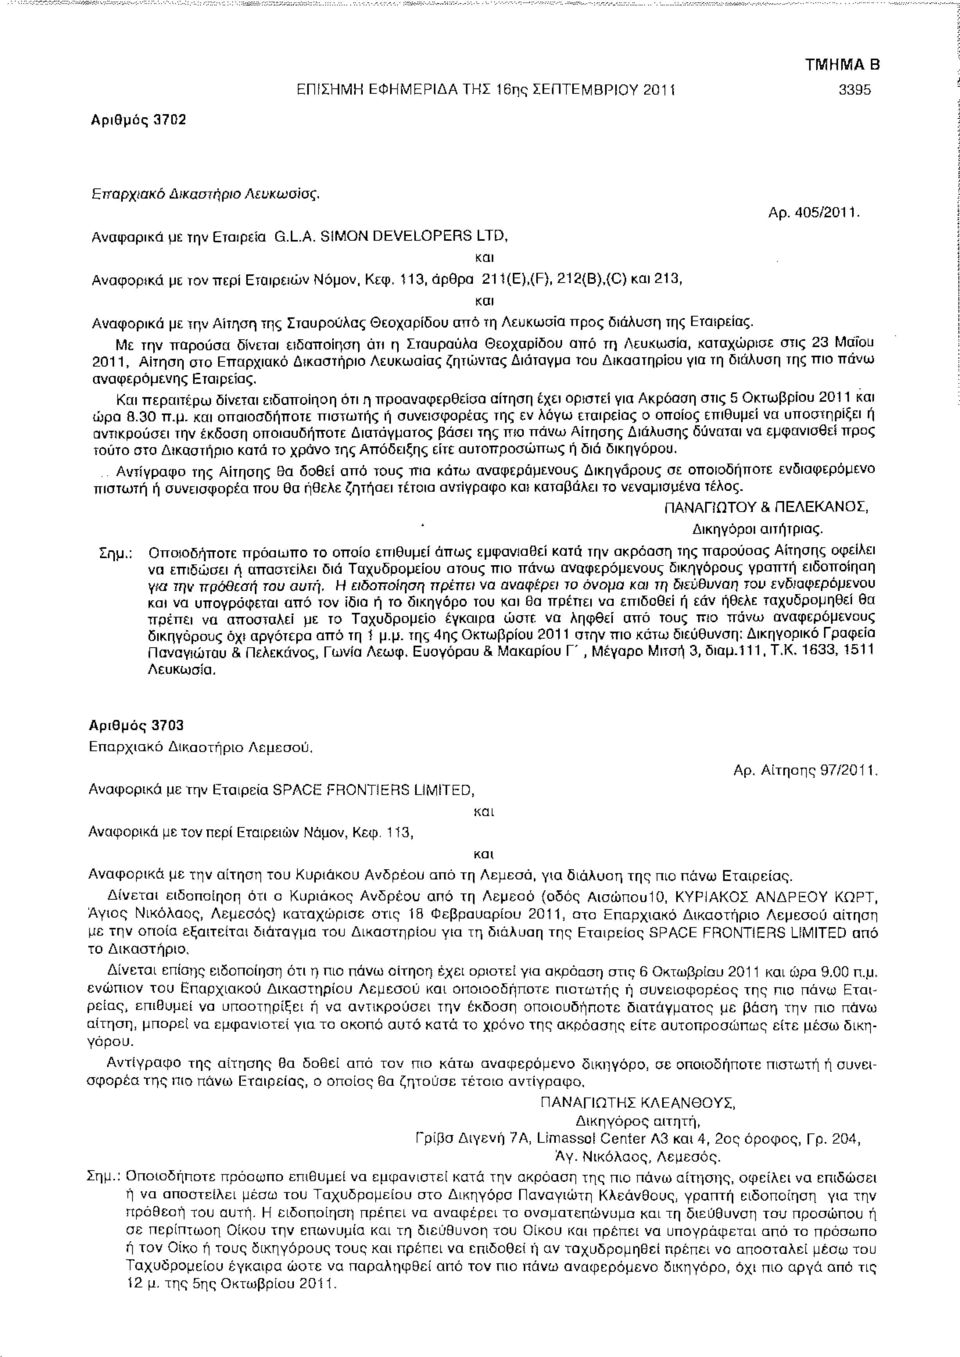 Με την παρούσα δίνεται ειδοποίηση ότι η Σταυρούλα Θεοχαρίδου από τη Λευκωσία, καταχώρισε στις 23 Μαίου 2011, Αίτηση στο Επαρχιακό Δικαστήριο Λευκωσίας ζητώντας Διάταγμα του Δικαστηρίου για τη διάλυση